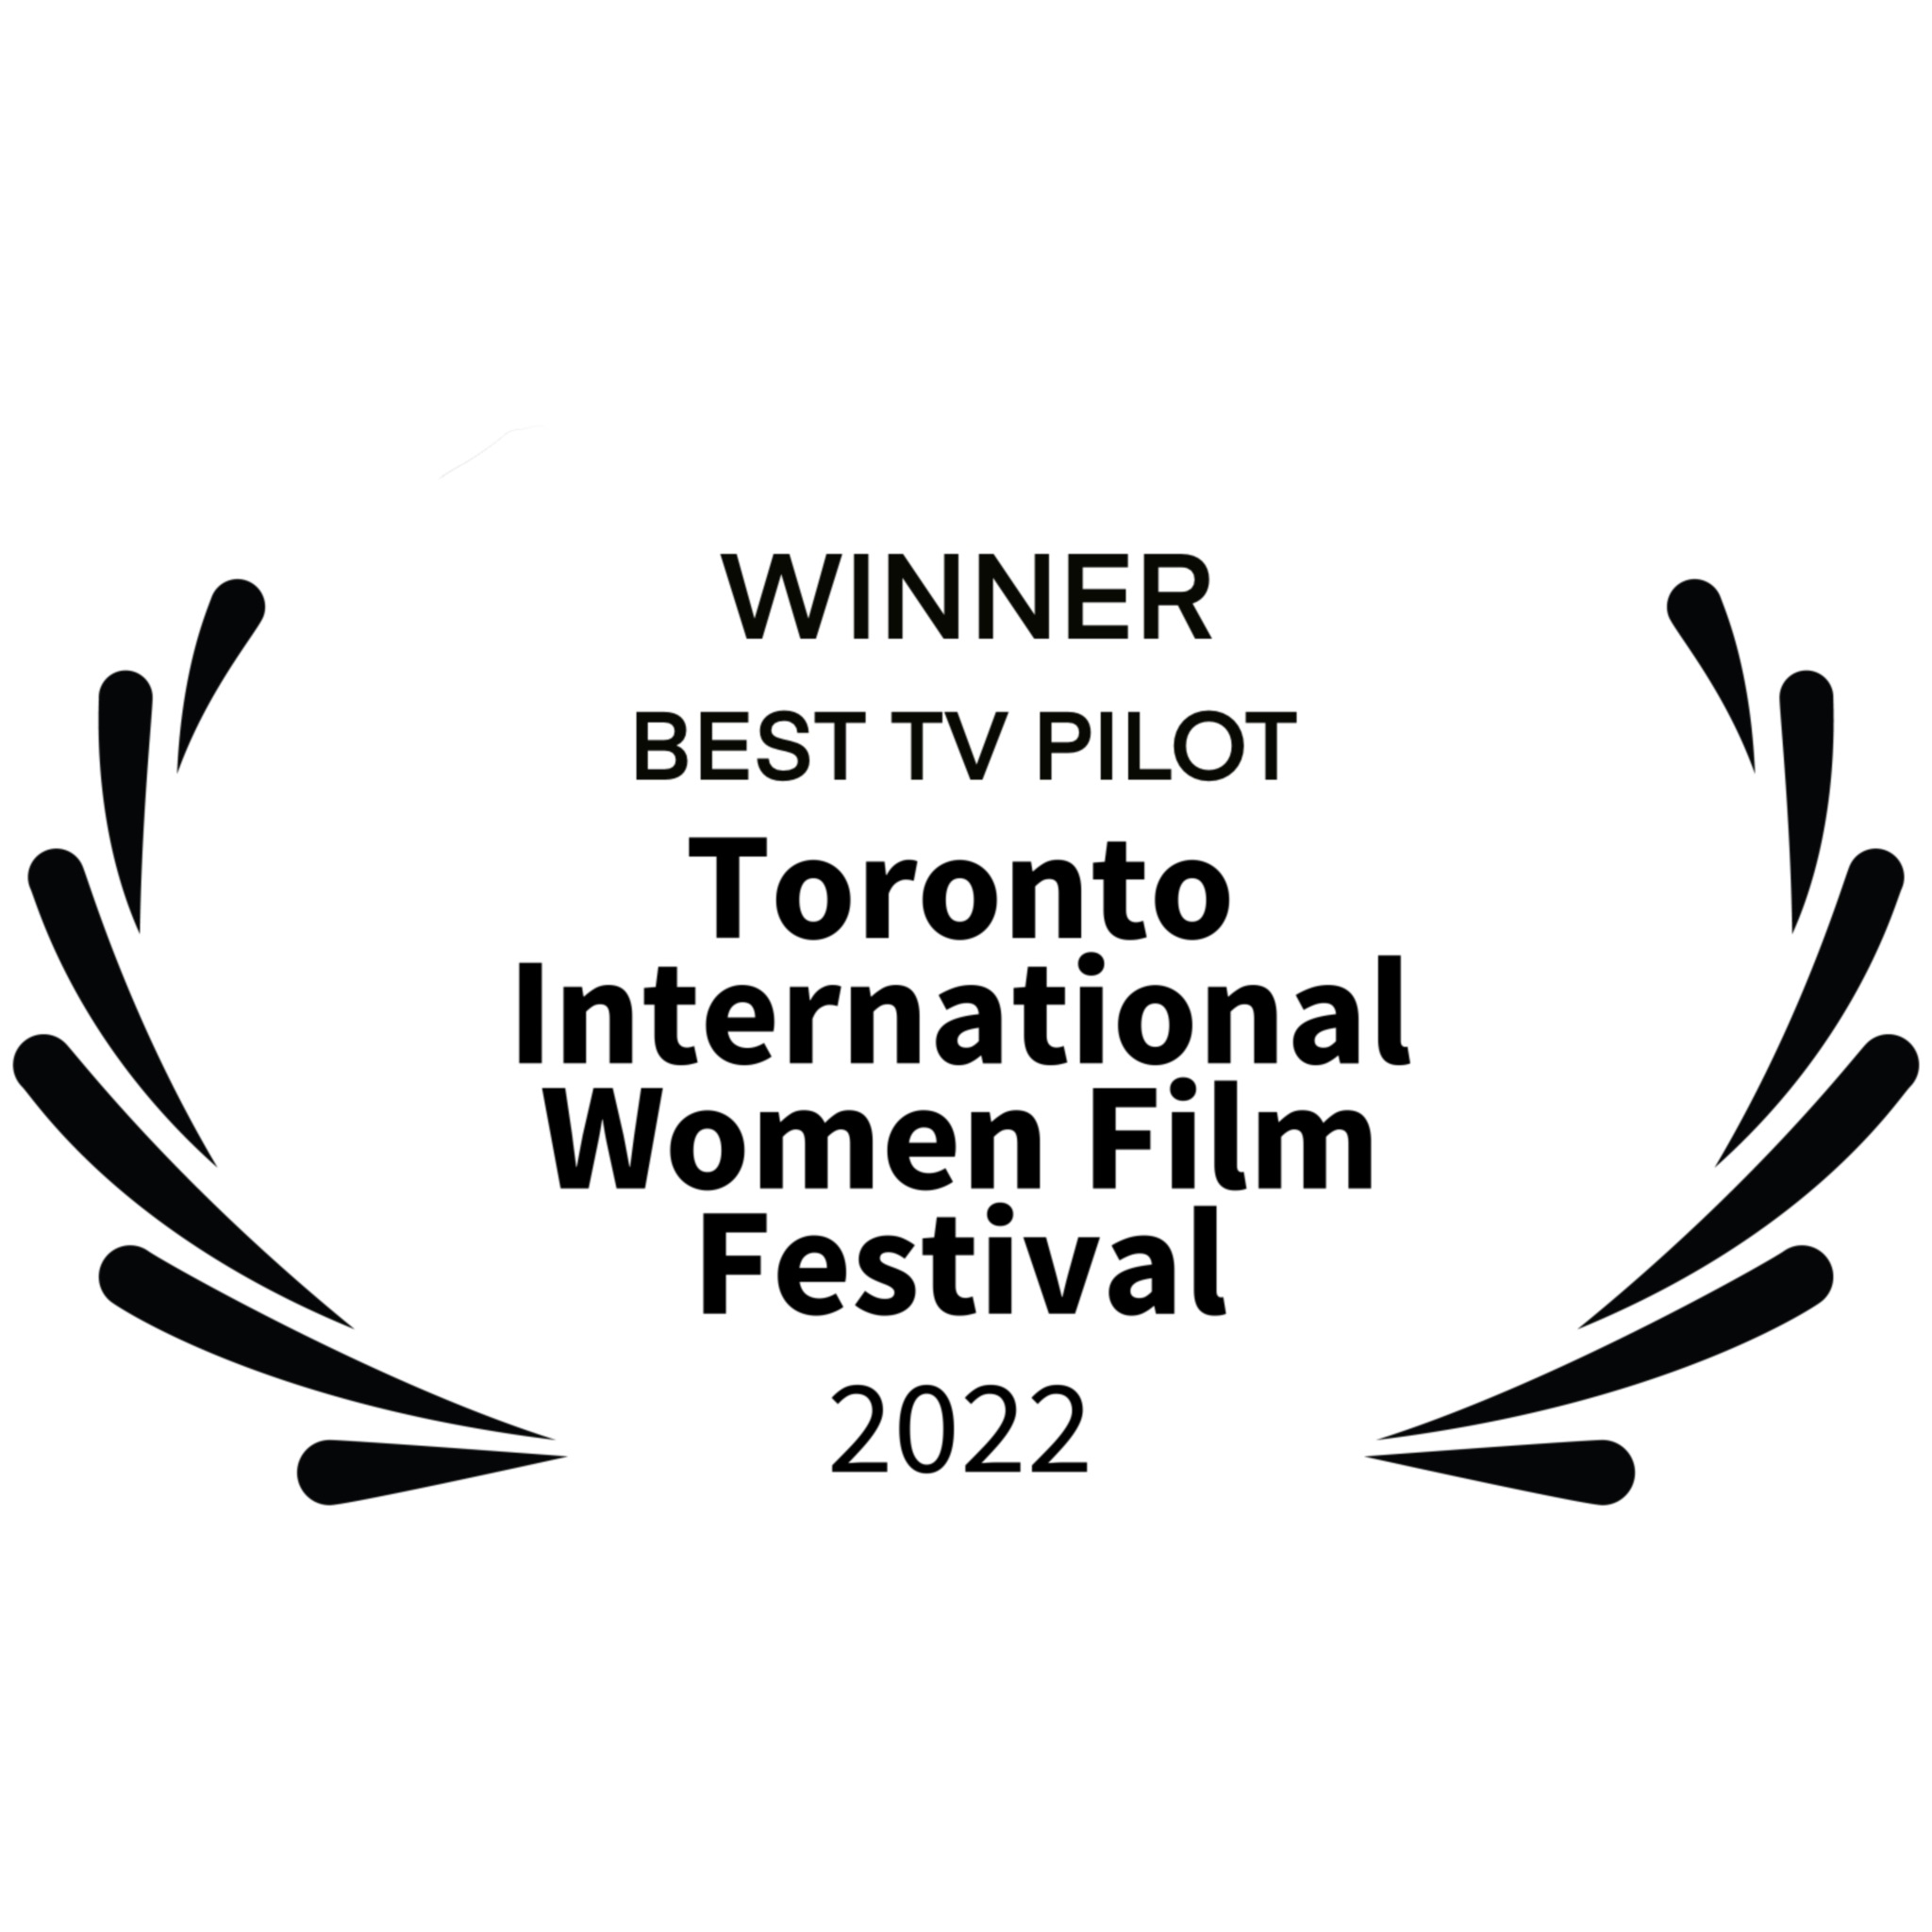 WINNER - BEST TV PILOT - Toronto International Women Film Festival 2022